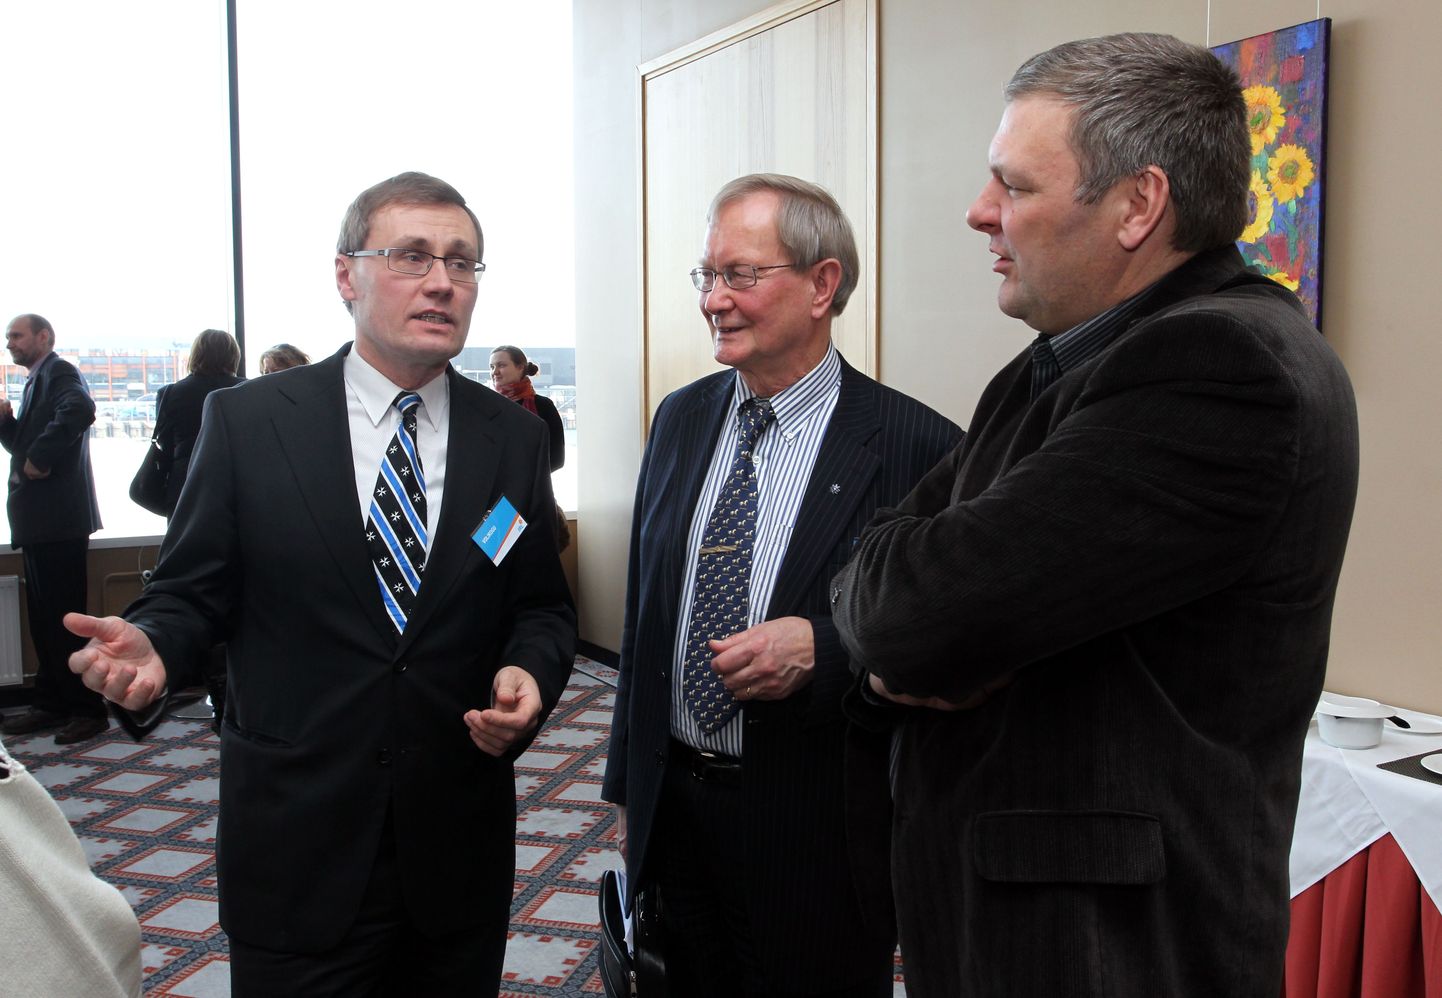 Тынис Лукас (слева) и Марко Померанц (справа) беседуют с депутатом Европарламента Тунне Келамом.